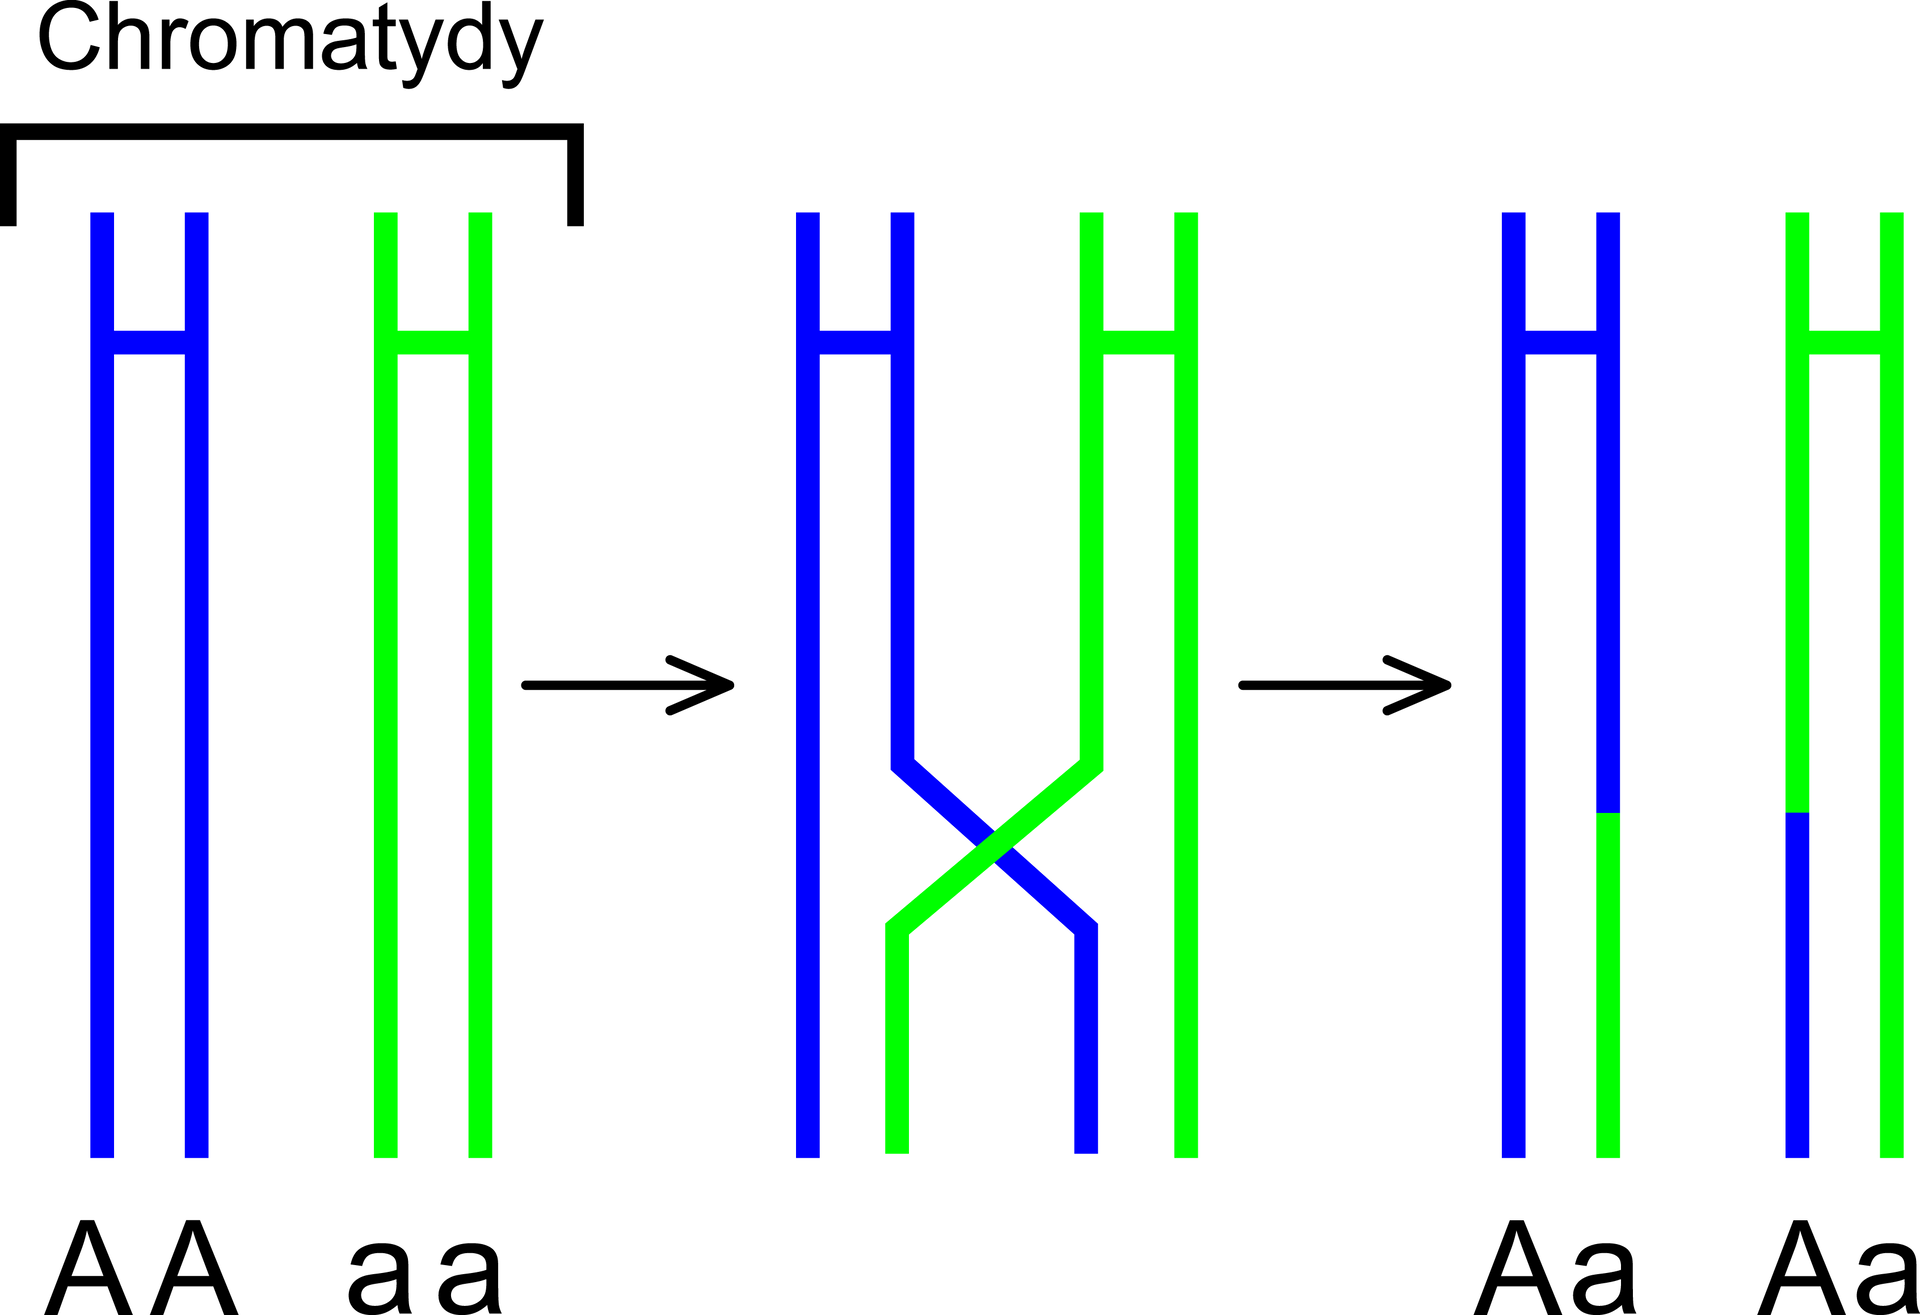 Schemat przedstawia przebieg procesu crossing‑over. Na pierwszej ilustracji znajdują się dwie chromatydy, jedna w kształcie litery H w kolorze niebieskim oznaczona jako duże A, duże A oraz druga w kształcie litery H w kolorze zielonym oznaczona jako małe a, małe a, które wymieniają się informacją genetyczną. Na drugiej ilustracji wewnętrzne ramiona chromatyd w kształcie litery H krzyżują się, Efektem tego procesu jest powstanie dwóch chromatyd duże A, małe a – dół pierwszej chromatydy w kształcie litery H w kolorze niebieskim ma kolor zielony, dół drugiej chromatydy w kształcie litery H w kolorze zielonym przyjmuje kolor niebieski. 